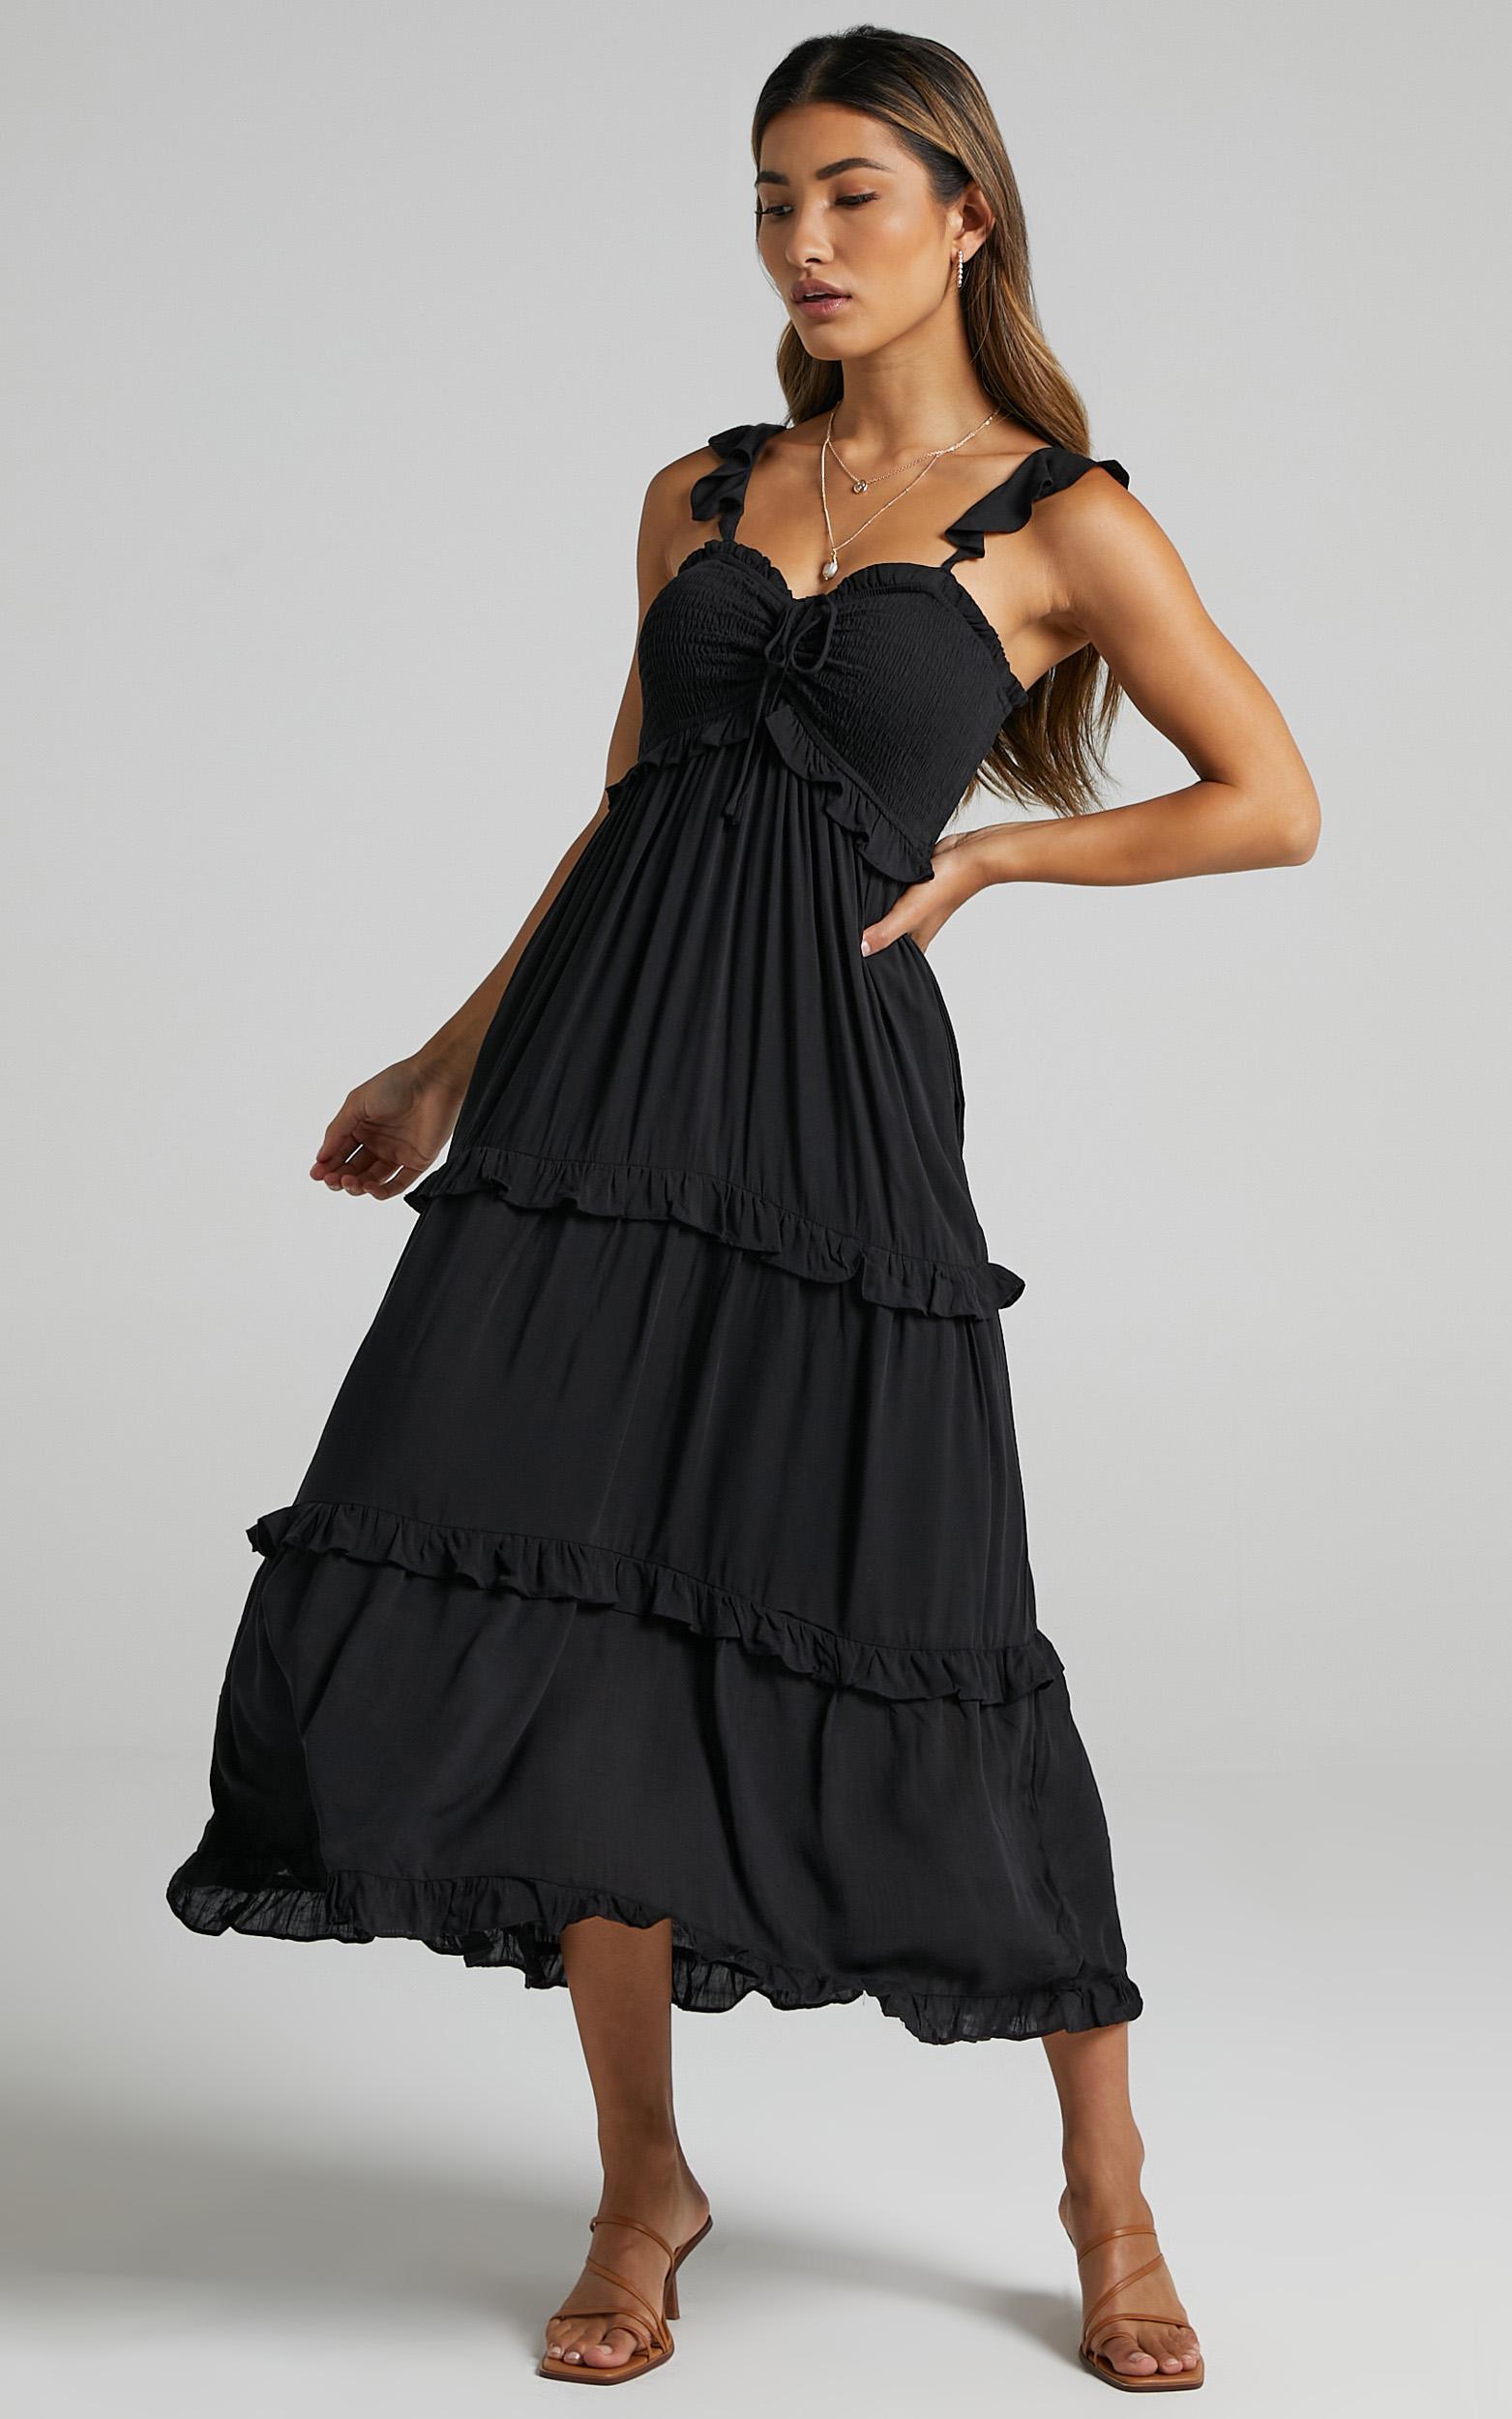 Good For The Soul Dress in Black - 06, BLK1, hi-res image number null